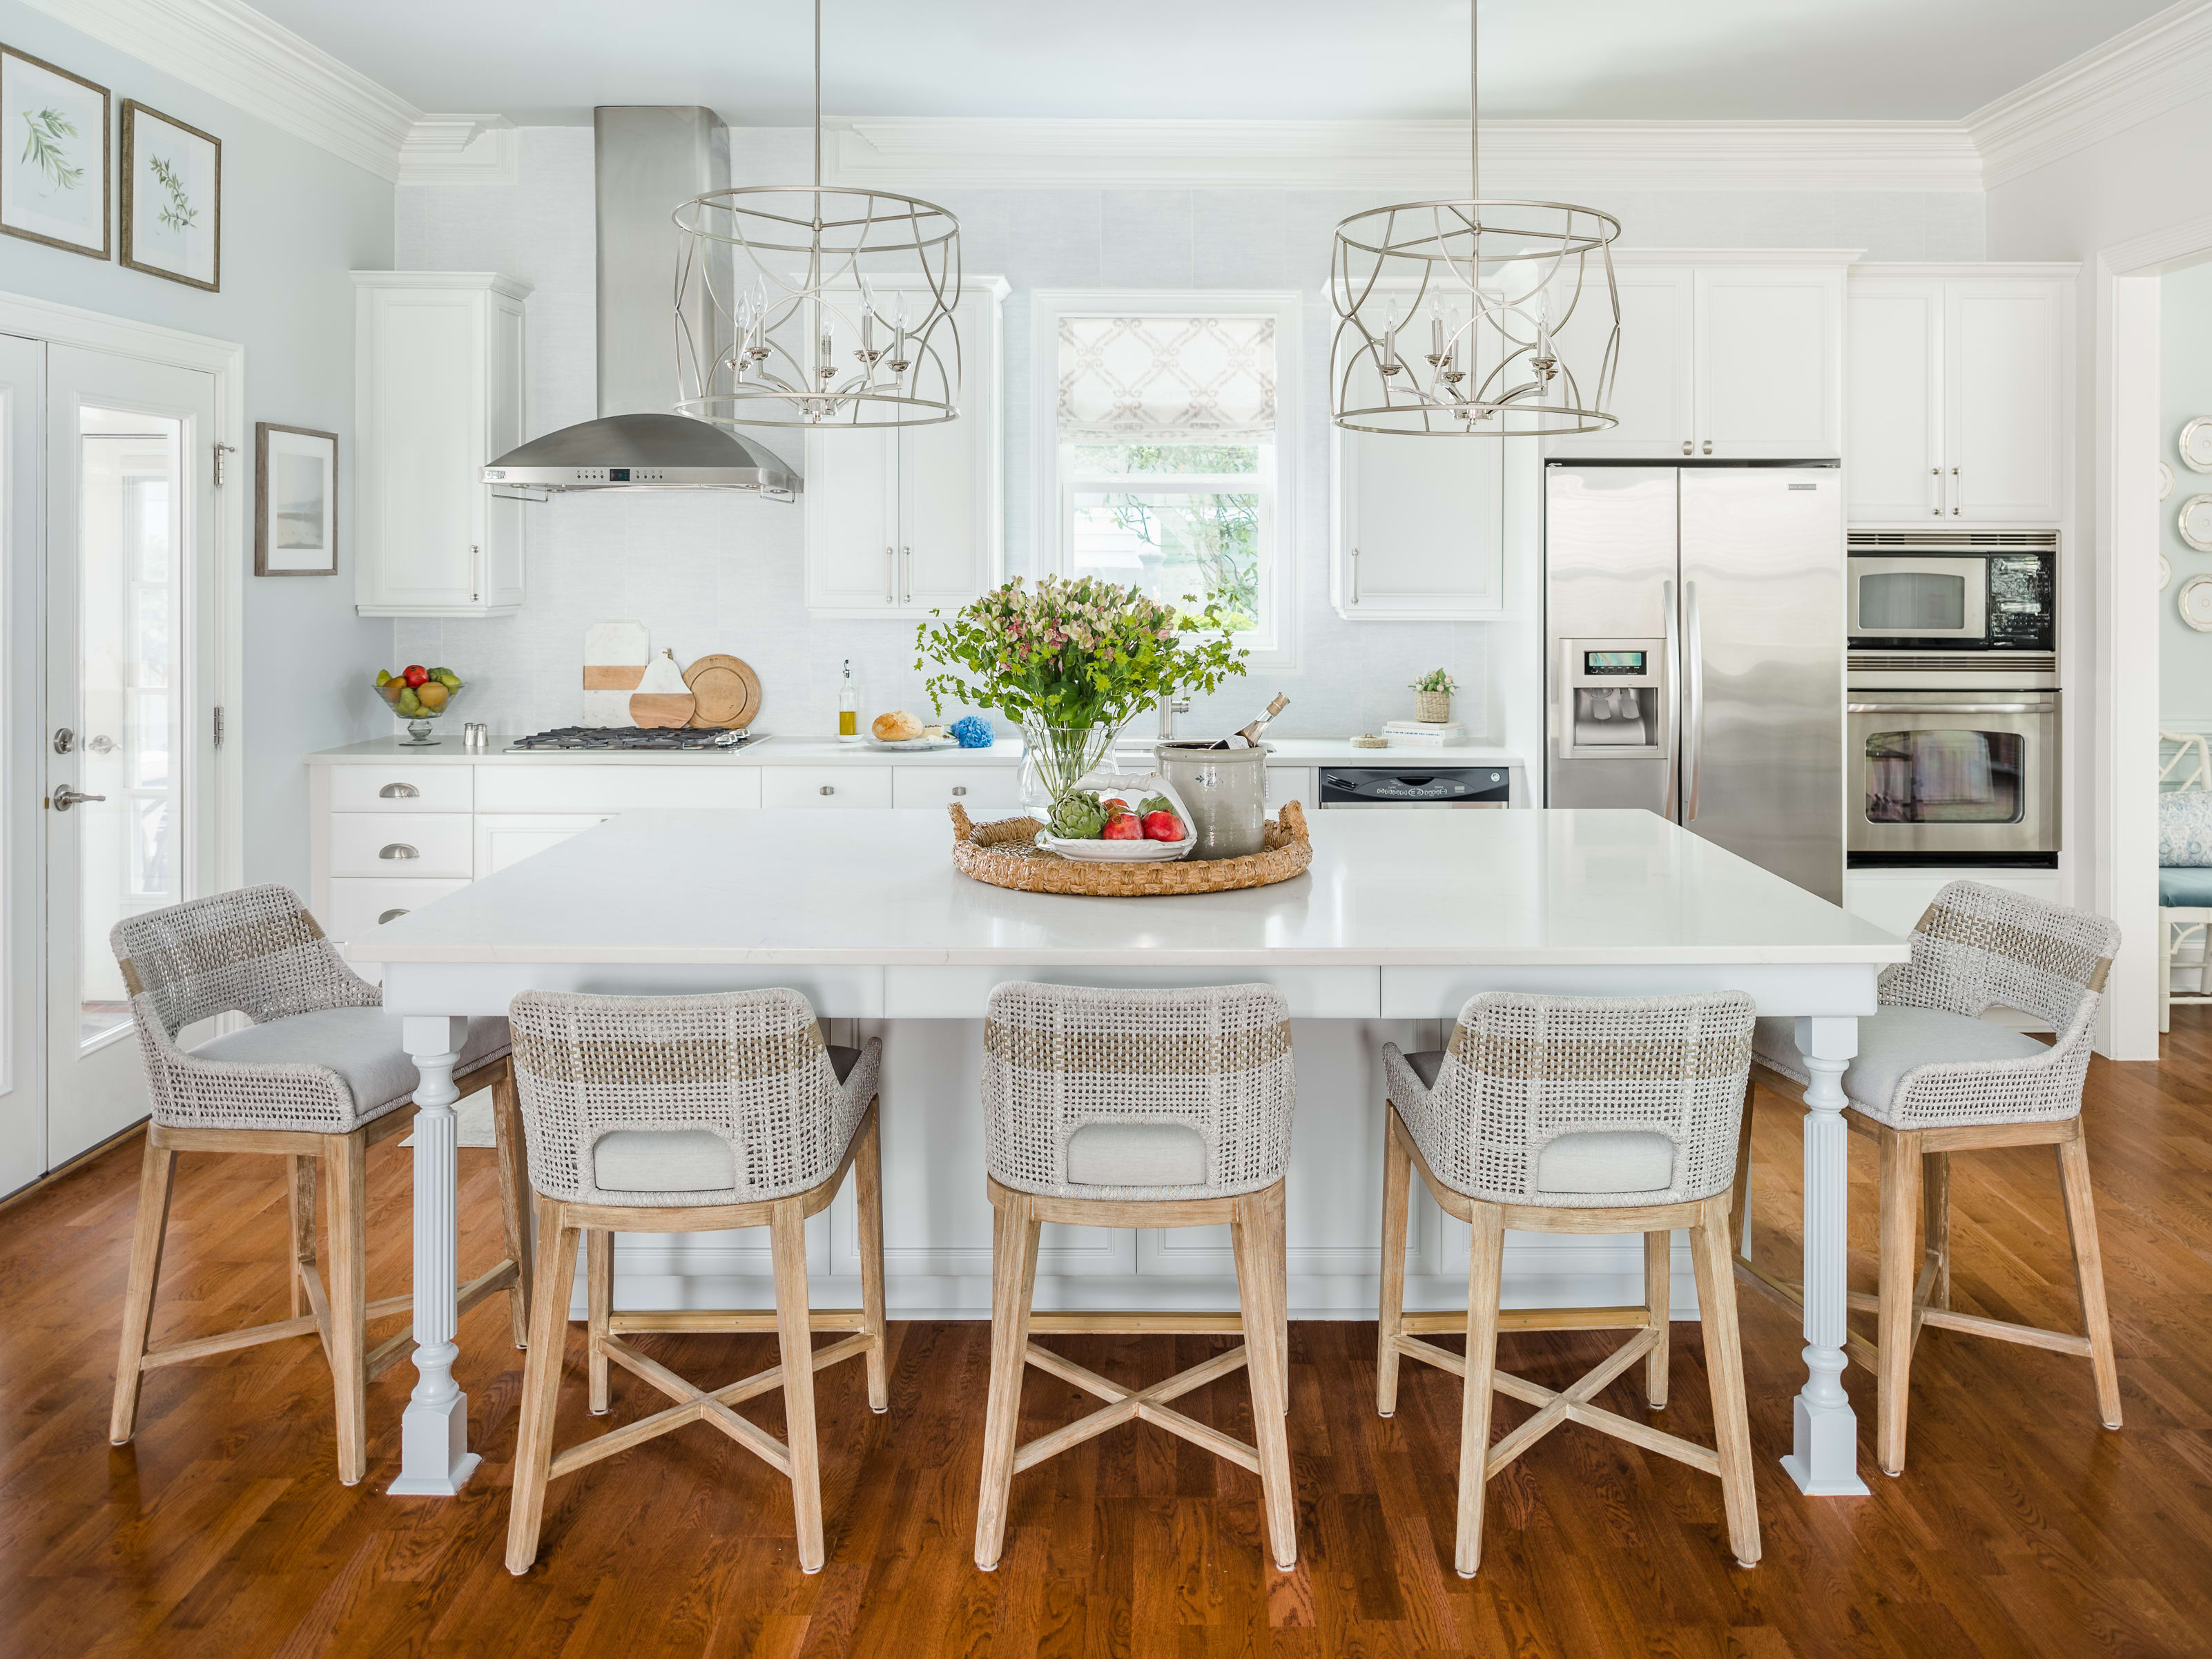 Ashbee Design  Diy kitchen storage, Kitchen design, Home remodeling